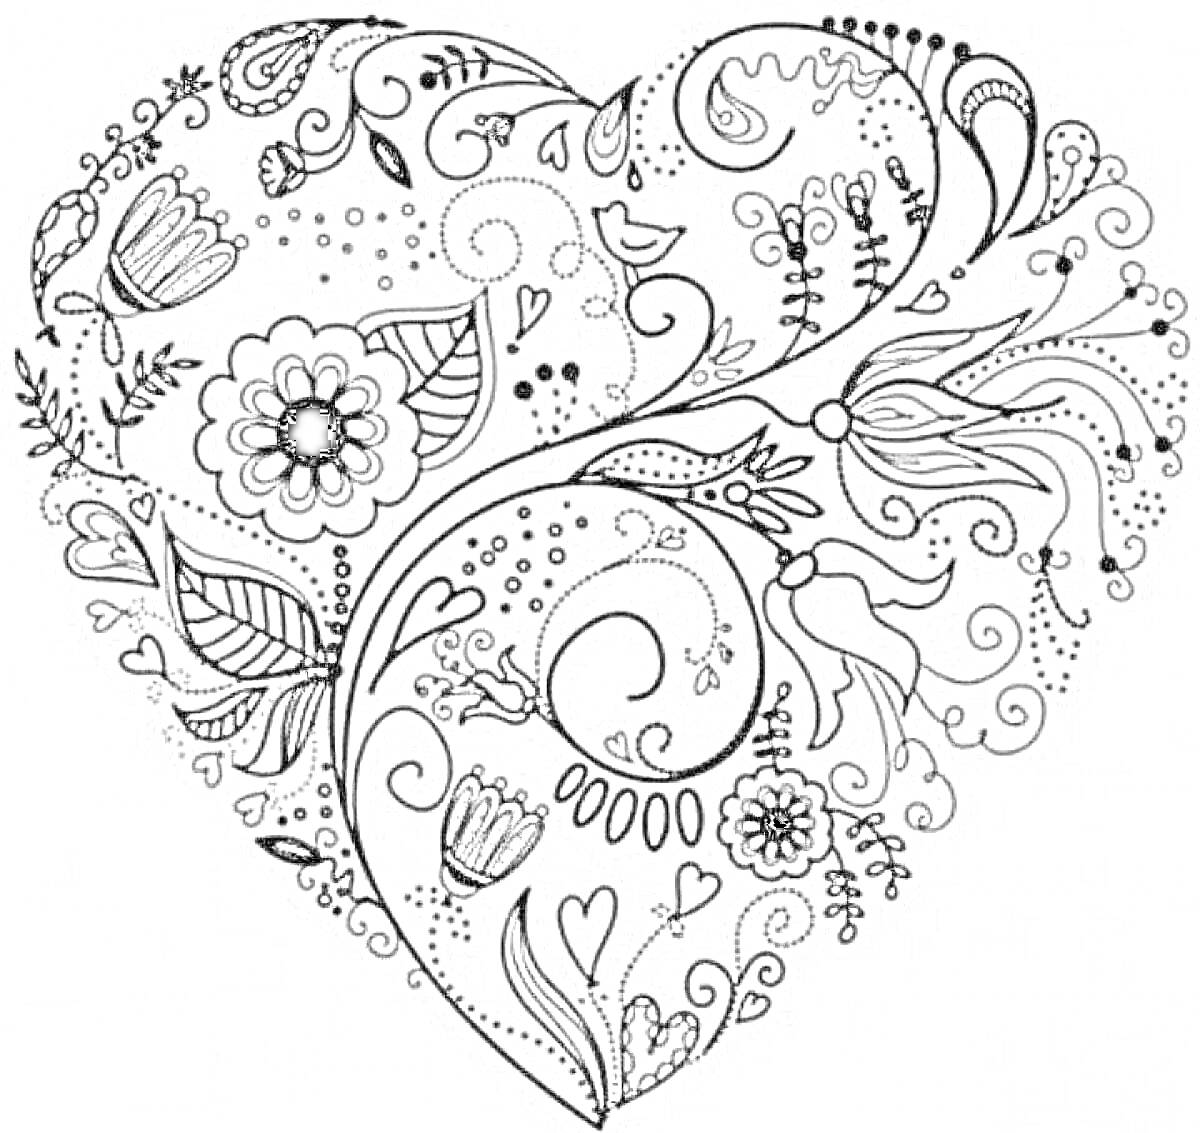 Раскраска Сердце с цветами и листьями, украшенное завитками и узорами